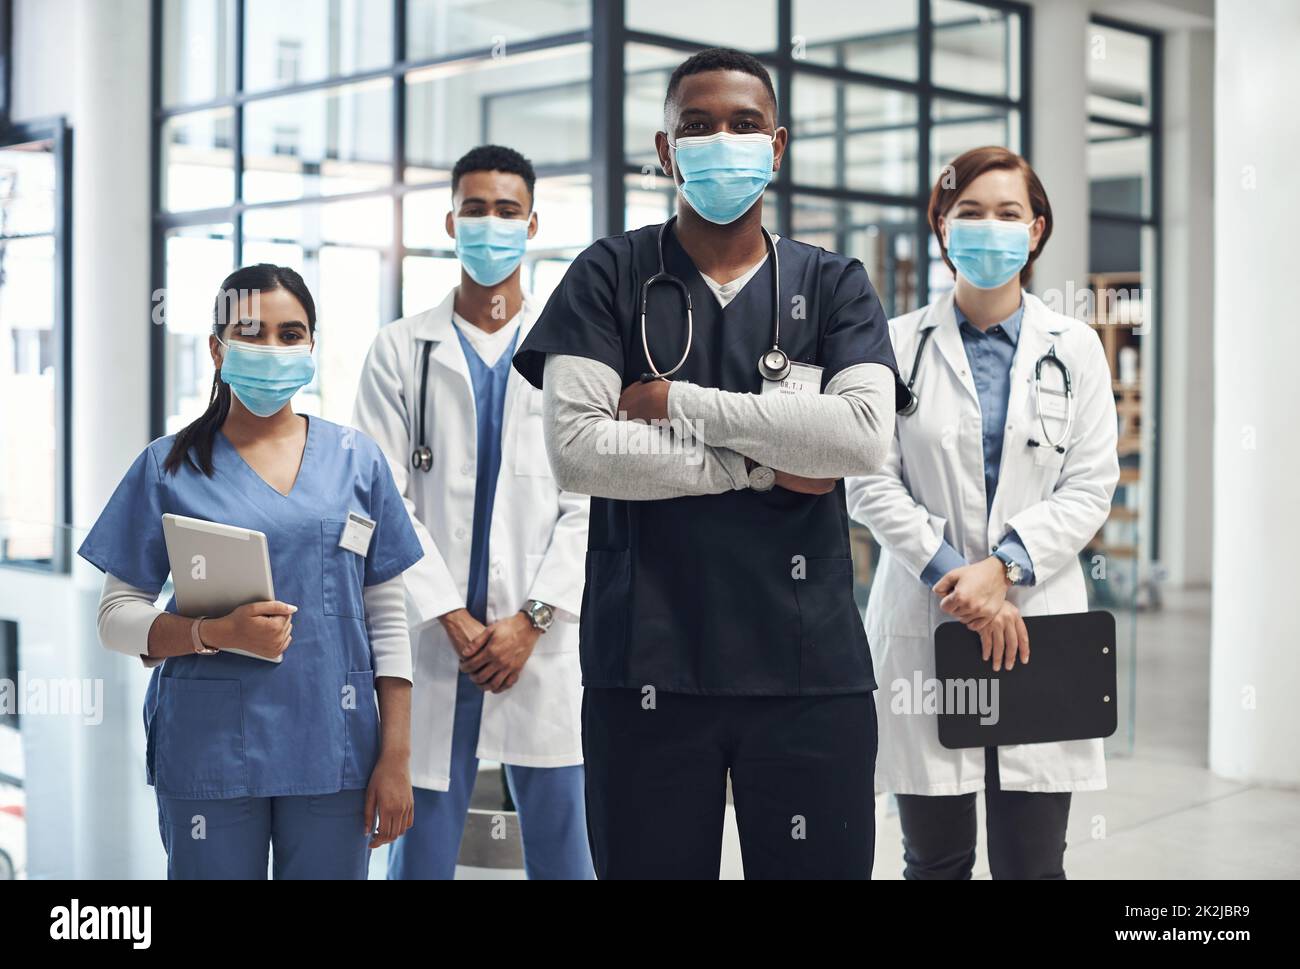 Il est important de vous protéger. Photo d'un groupe de médecins et d'infirmières portant des masques pour se protéger de la maladie. Banque D'Images